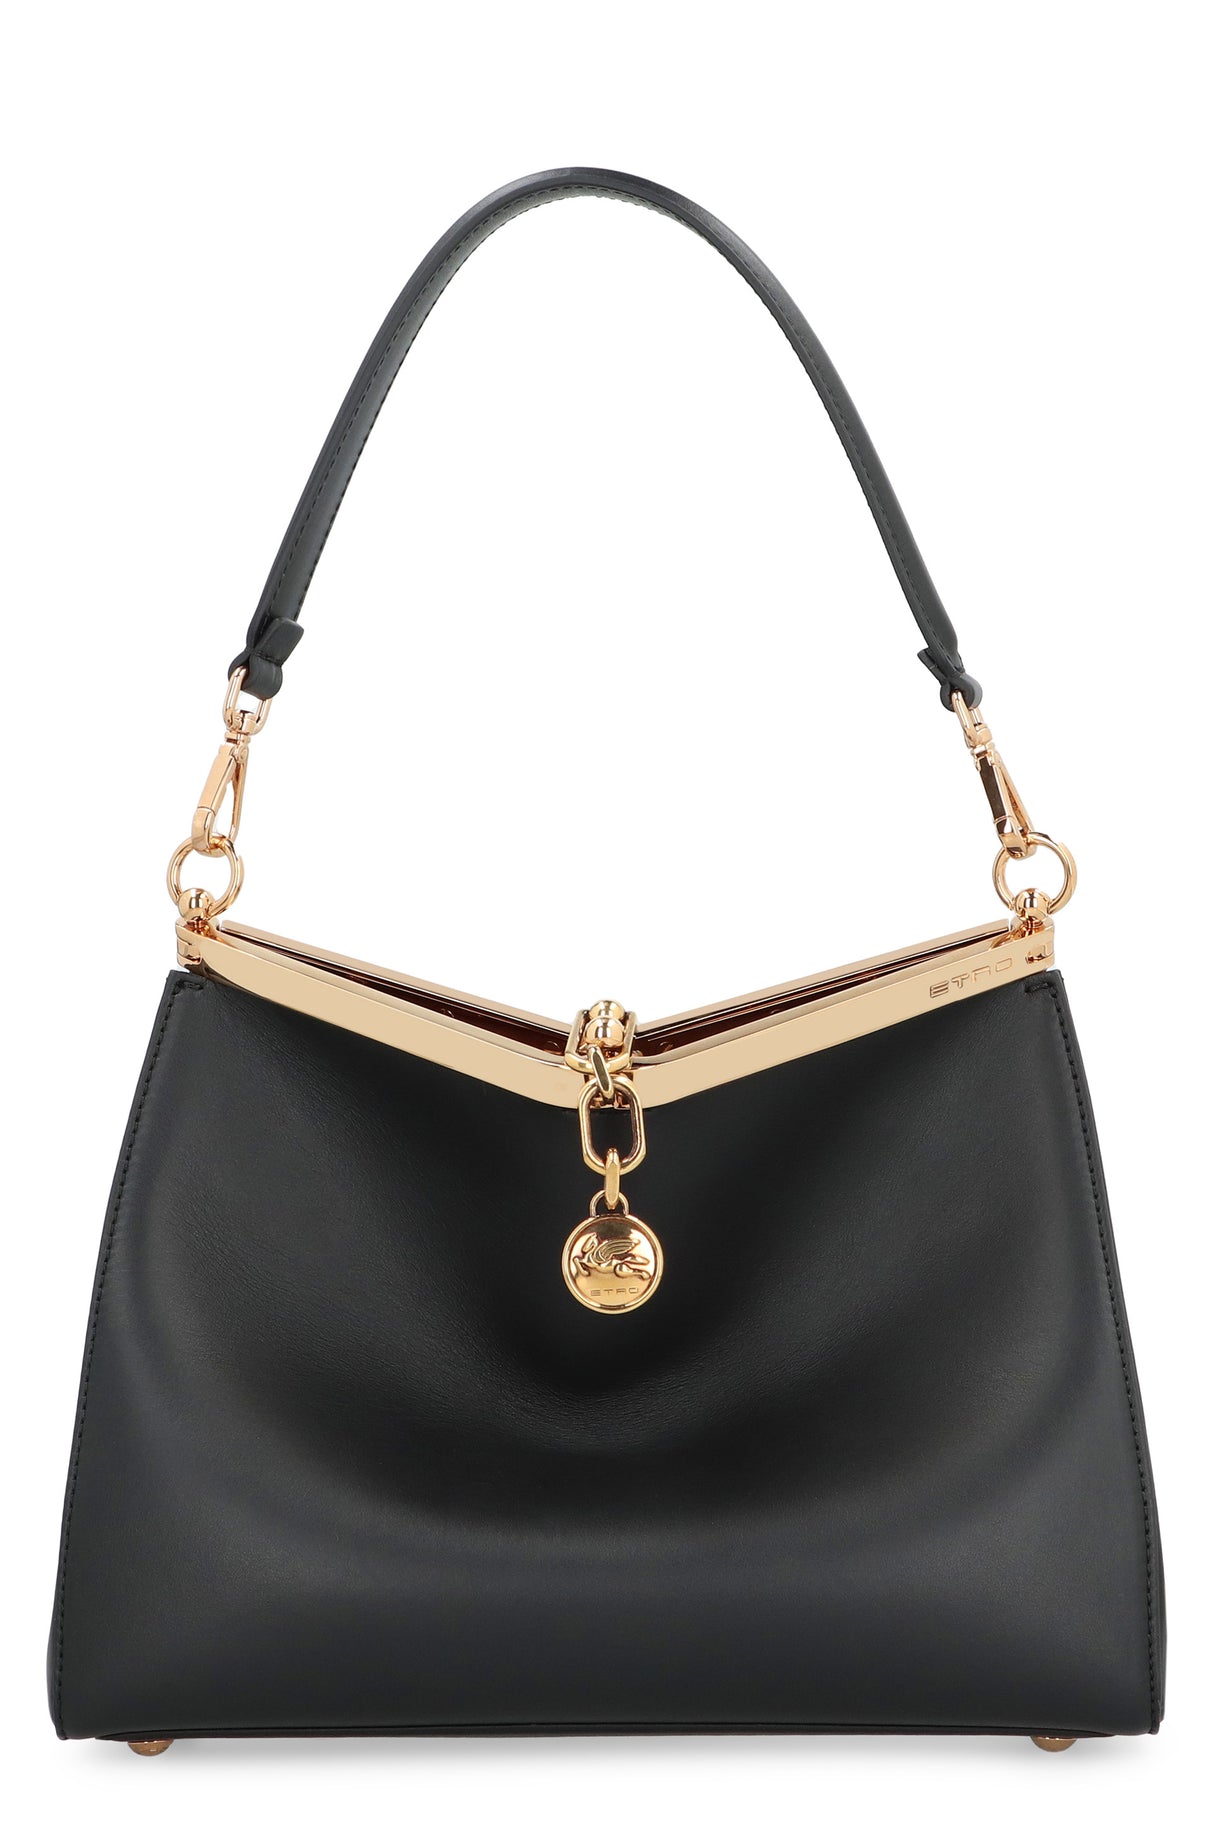 ETRO Sleek and Sophisticated Shoulder Handbag for Women in Black